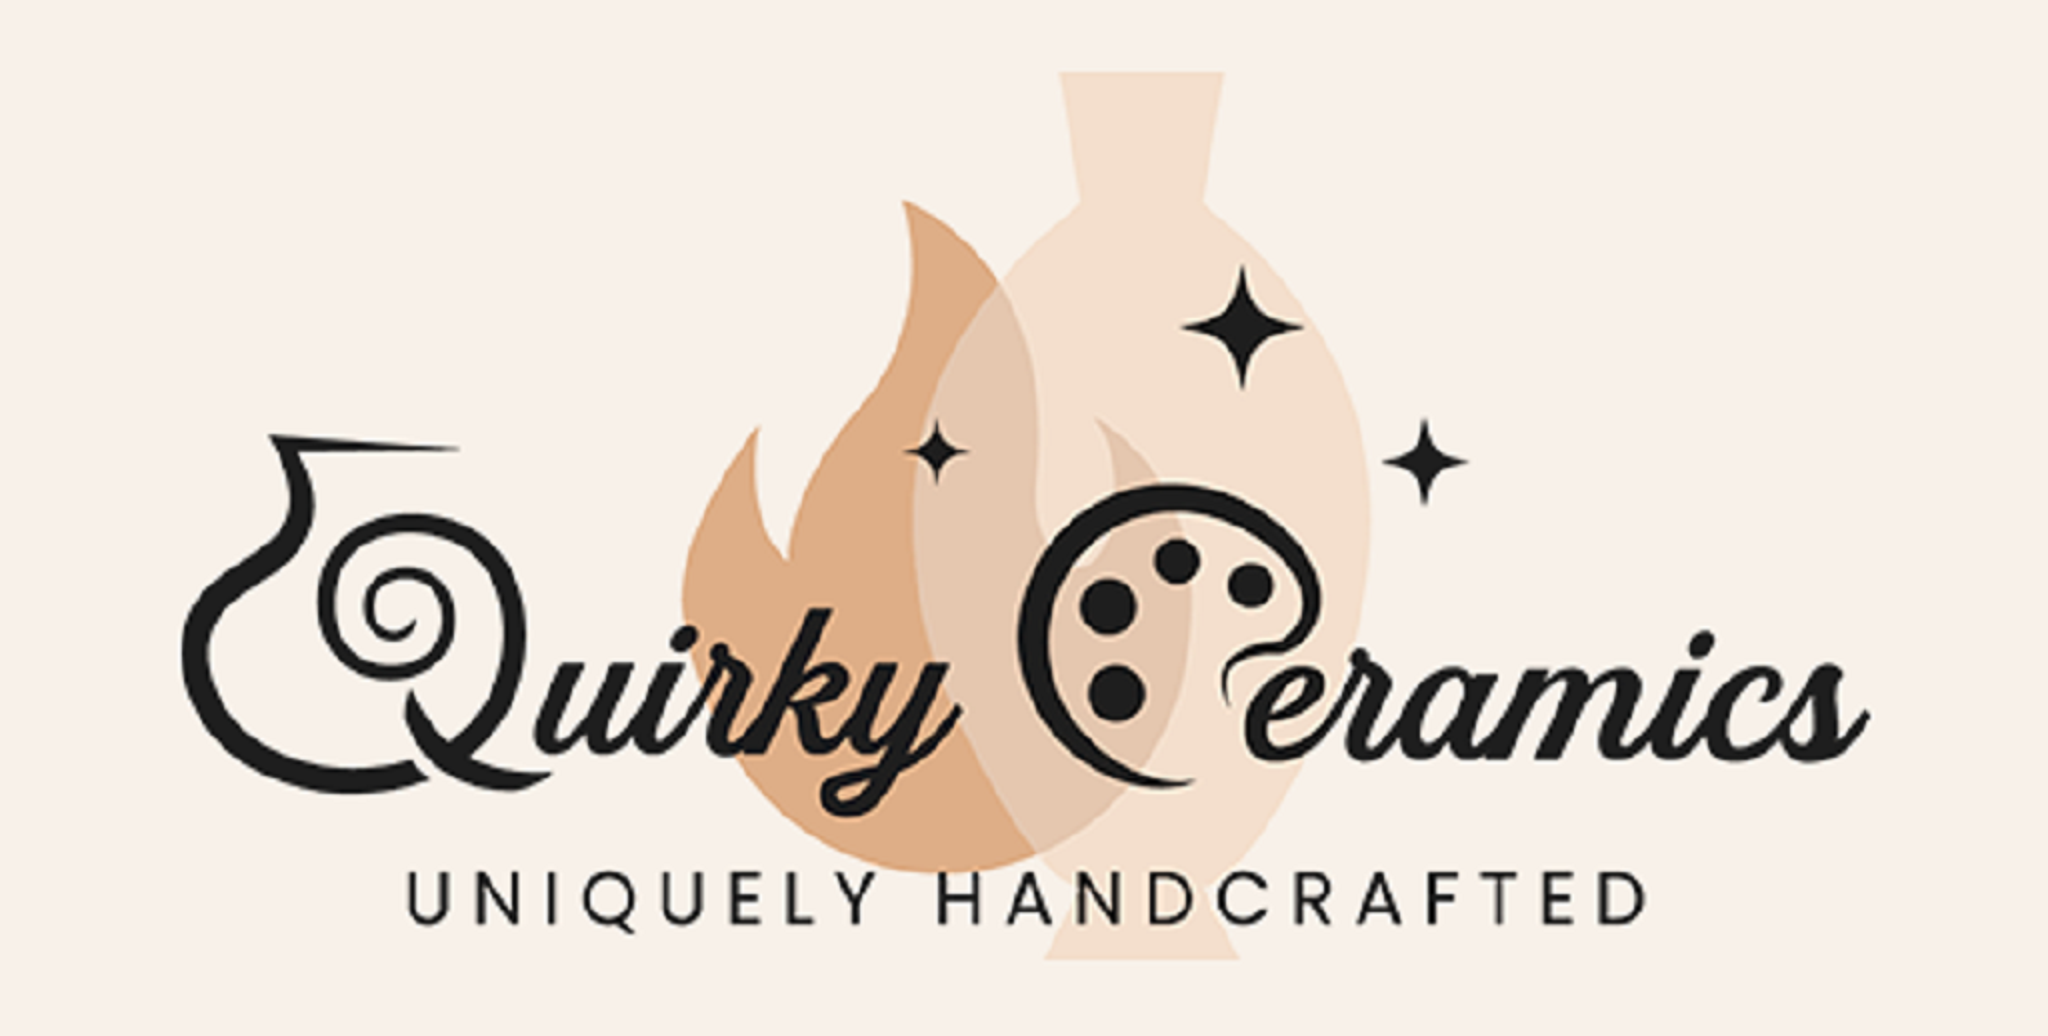 Quirky Ceramics